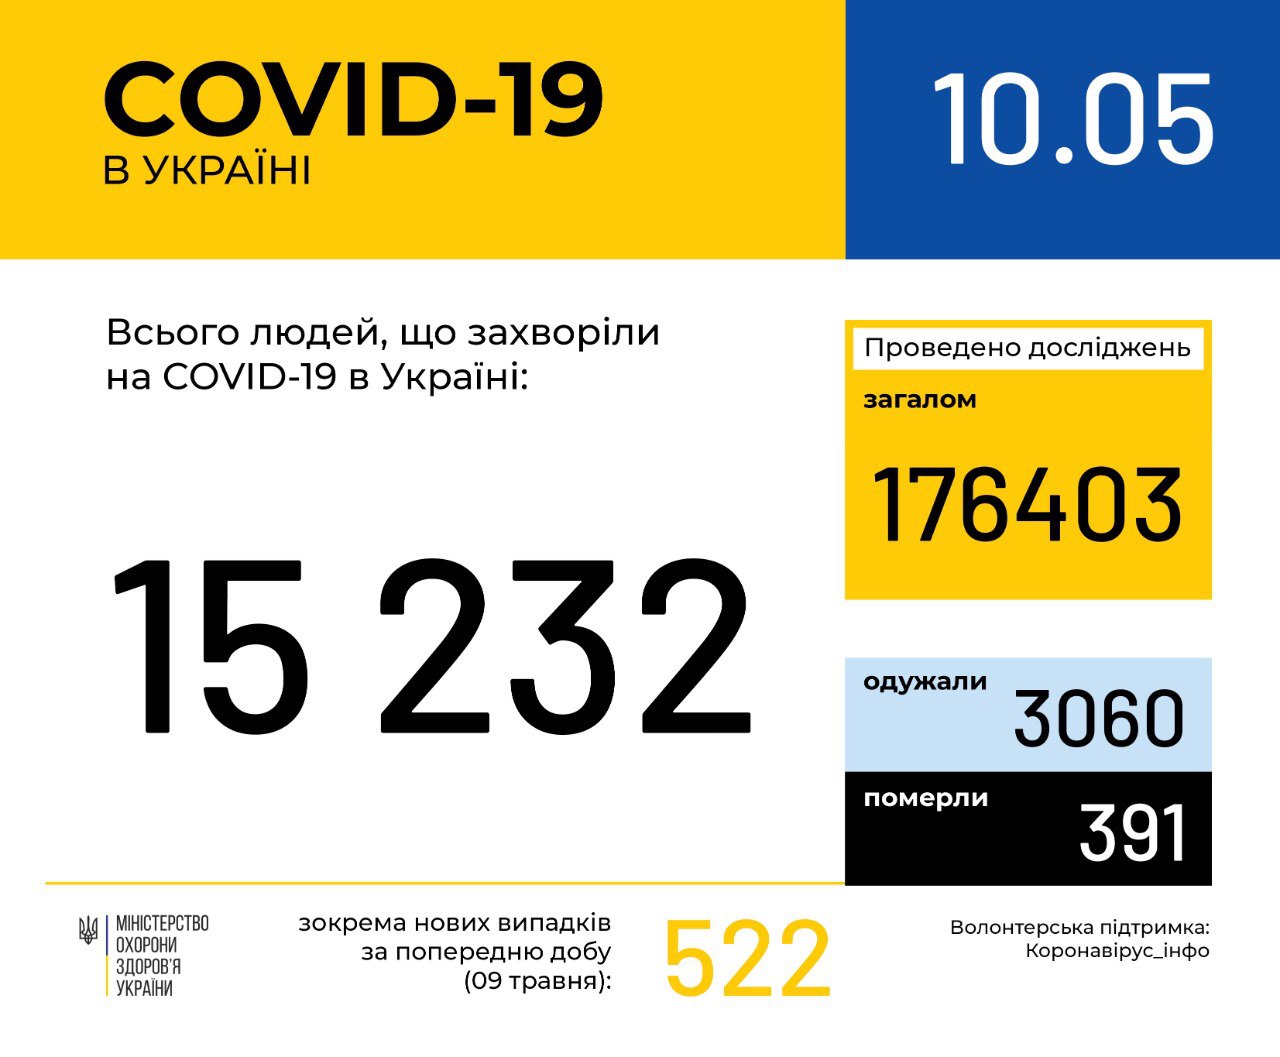 В Україні зафіксовано 15232 випадки коронавірусної хвороби COVID-19